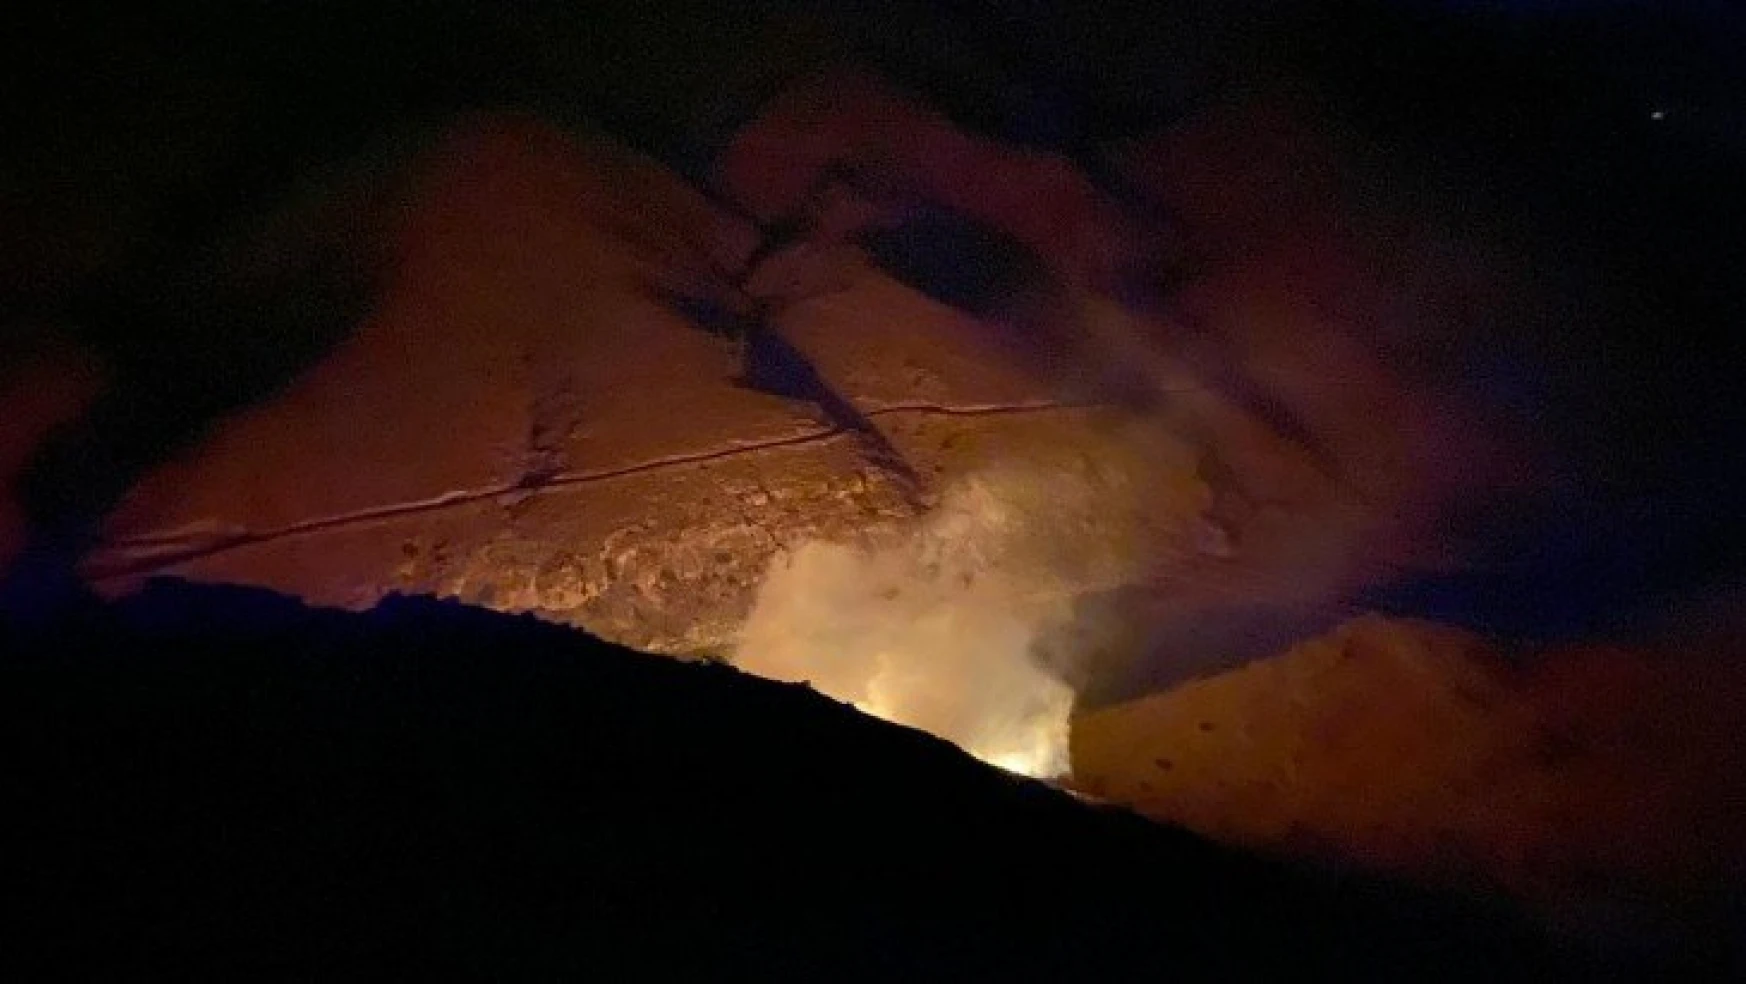 Elazığ'da örtü yangını, ekipler müdahale ediyor